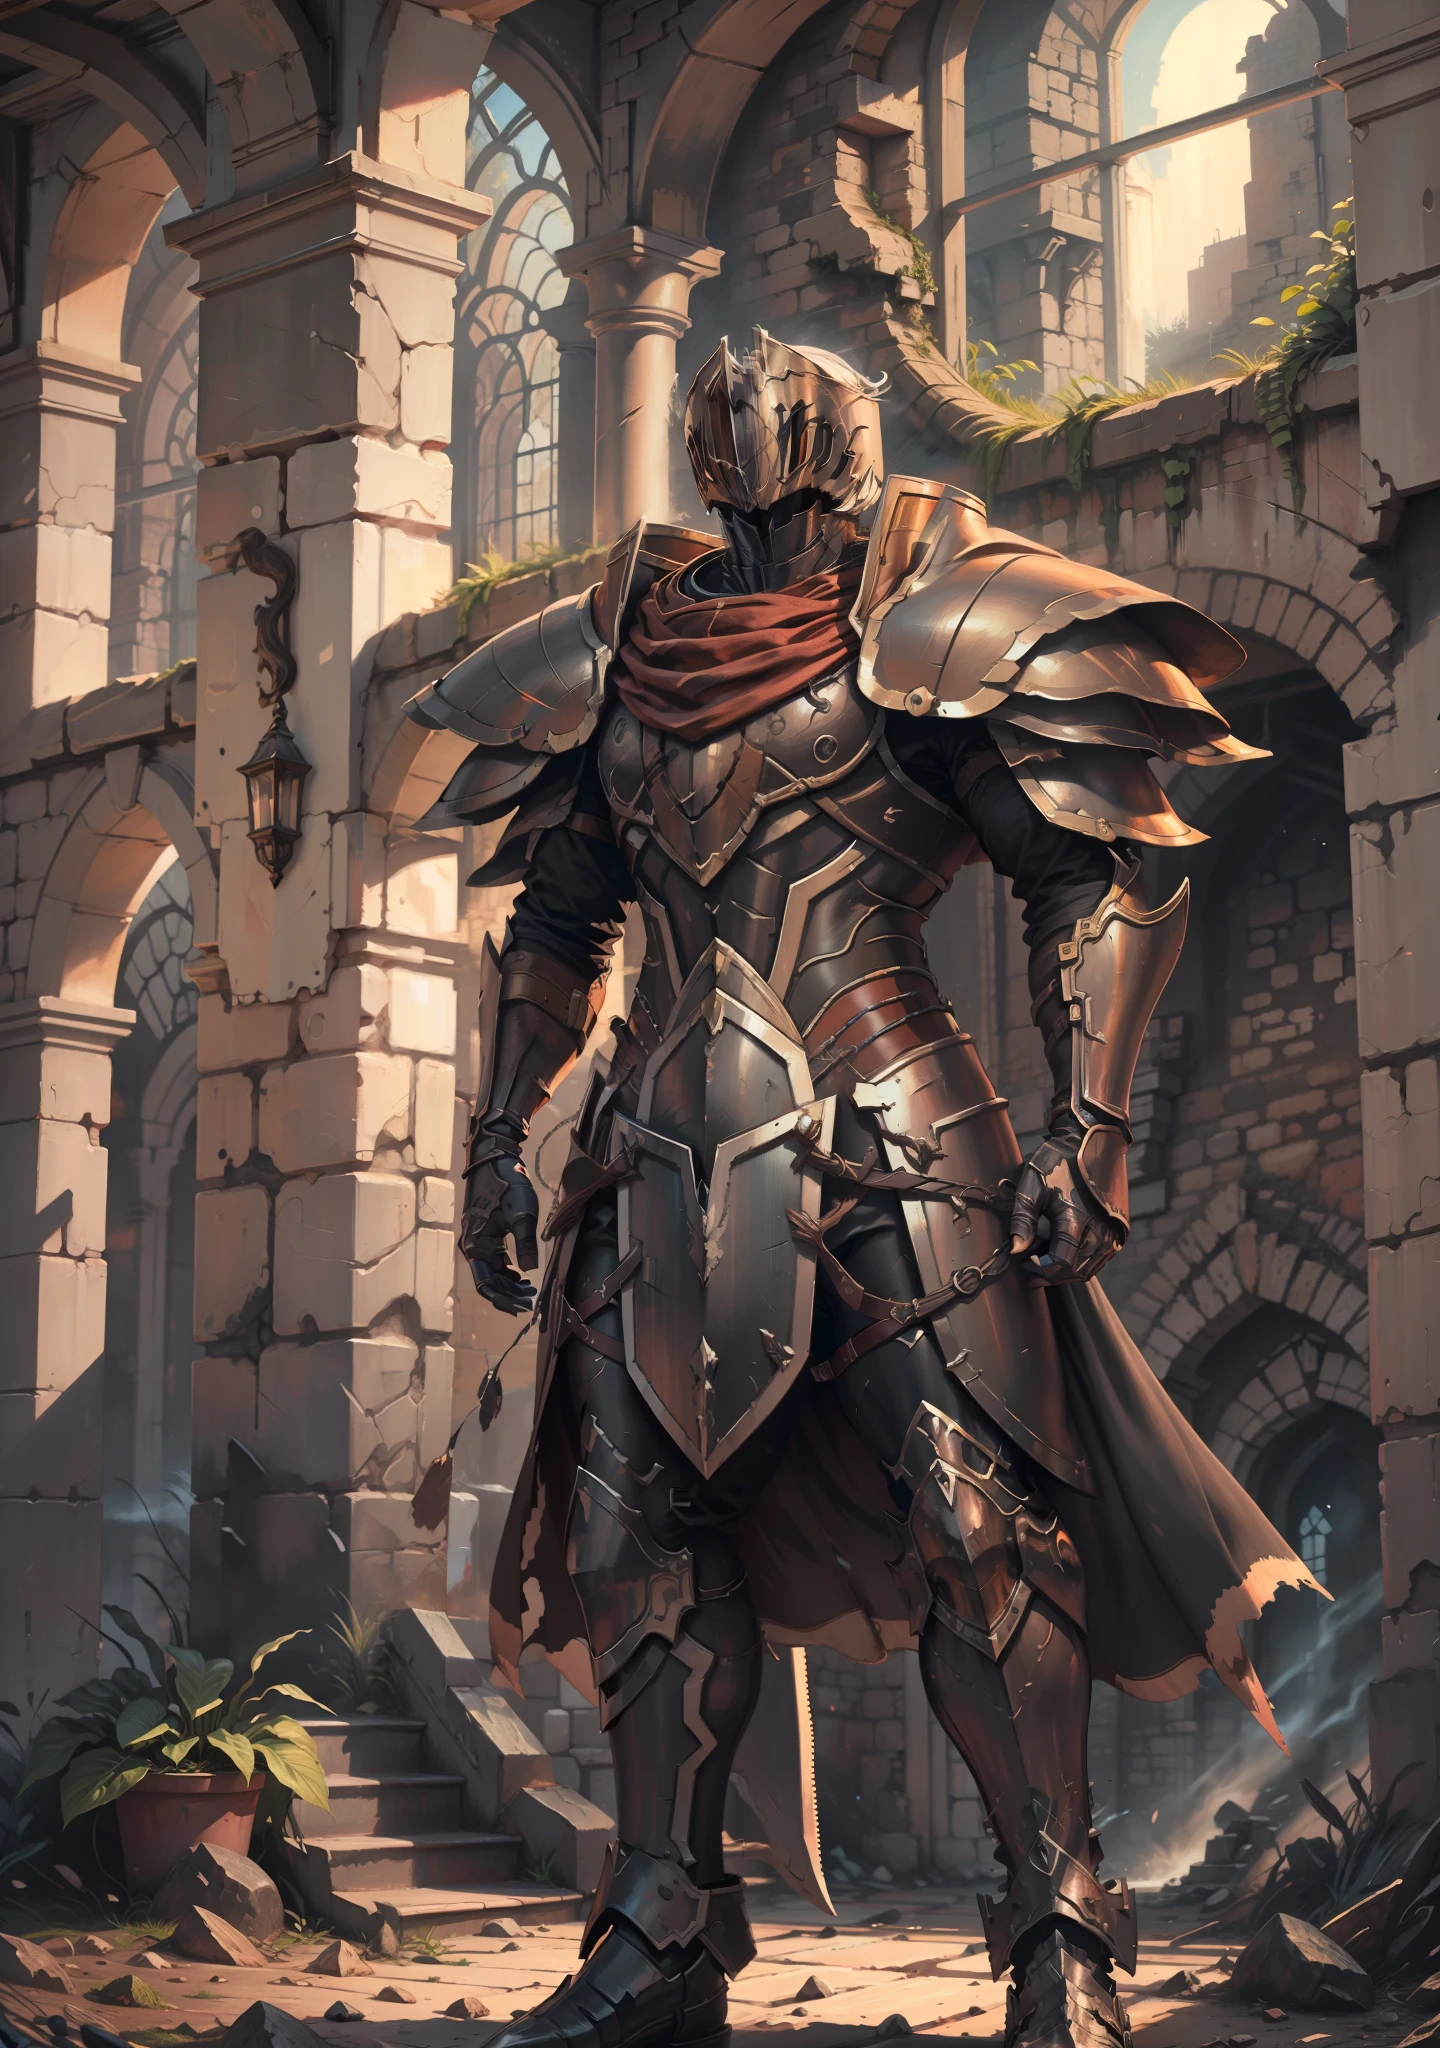 meilleure qualité, Illustration super détaillée, rouillery Knight, armure fissurée, rouiller, ruine du château, pose héroïque